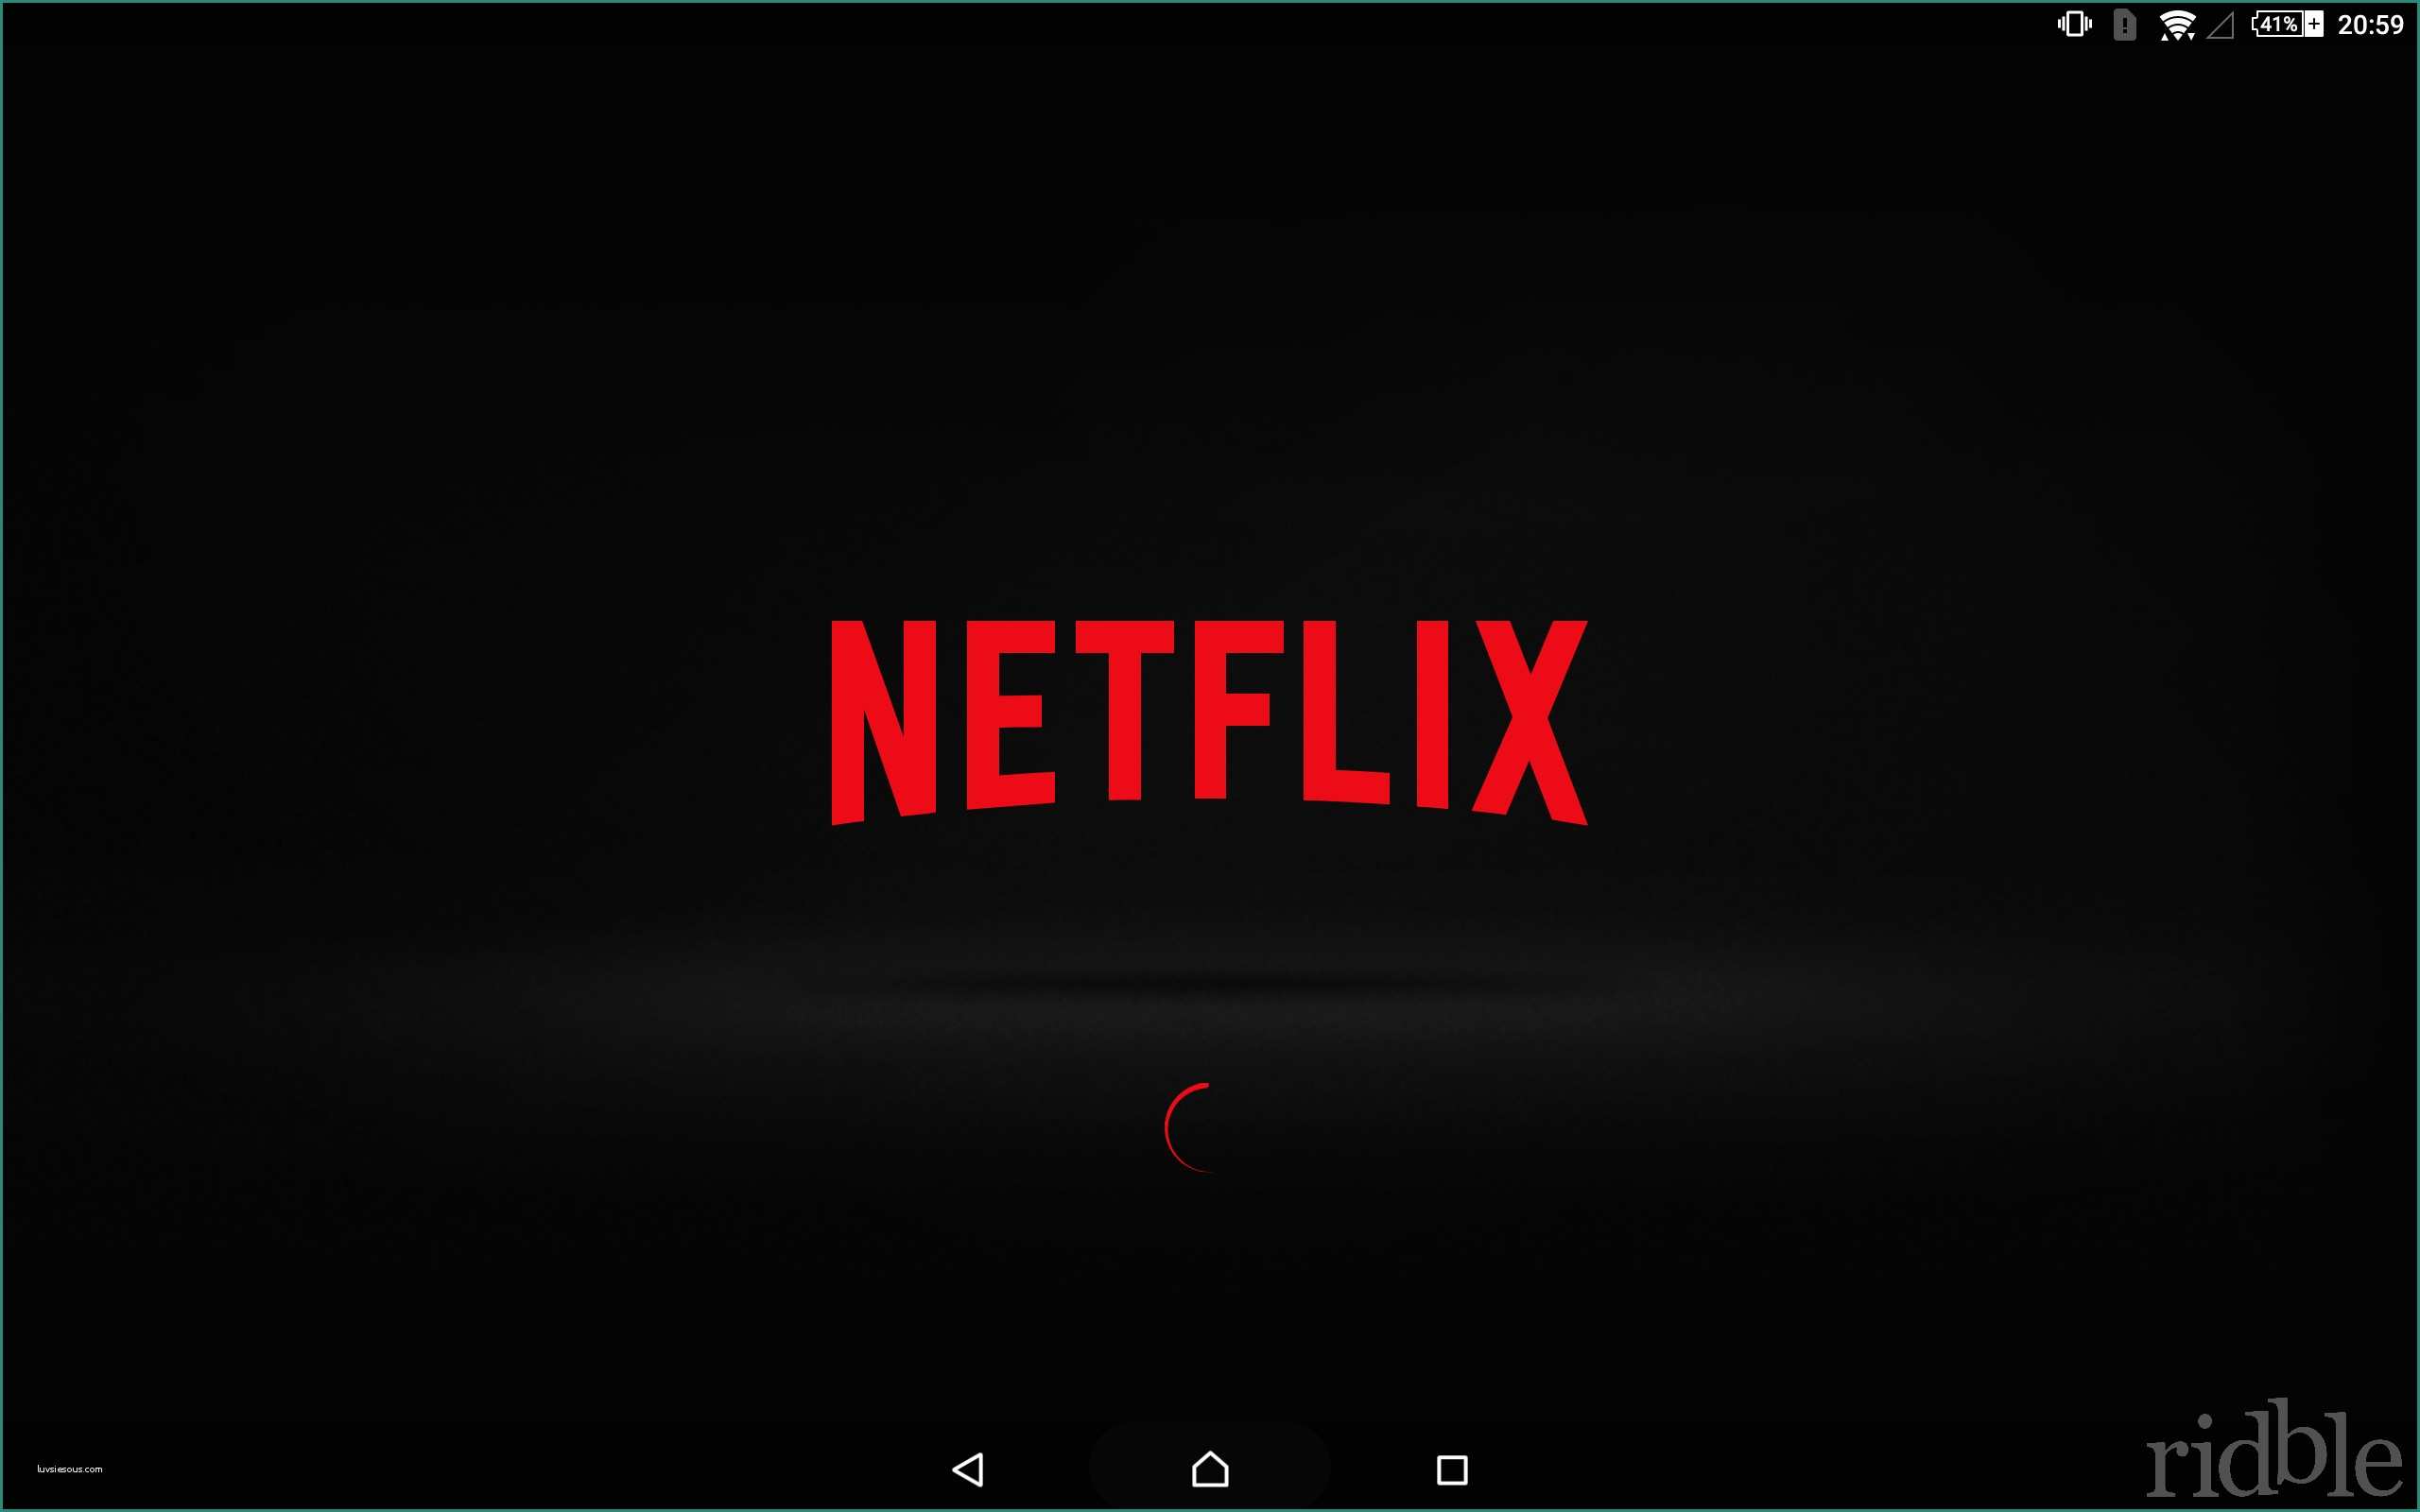 Timvision Vs Netflix E Netflix In Italia La Recensione Su Catalogo E Prezzi • Ridble